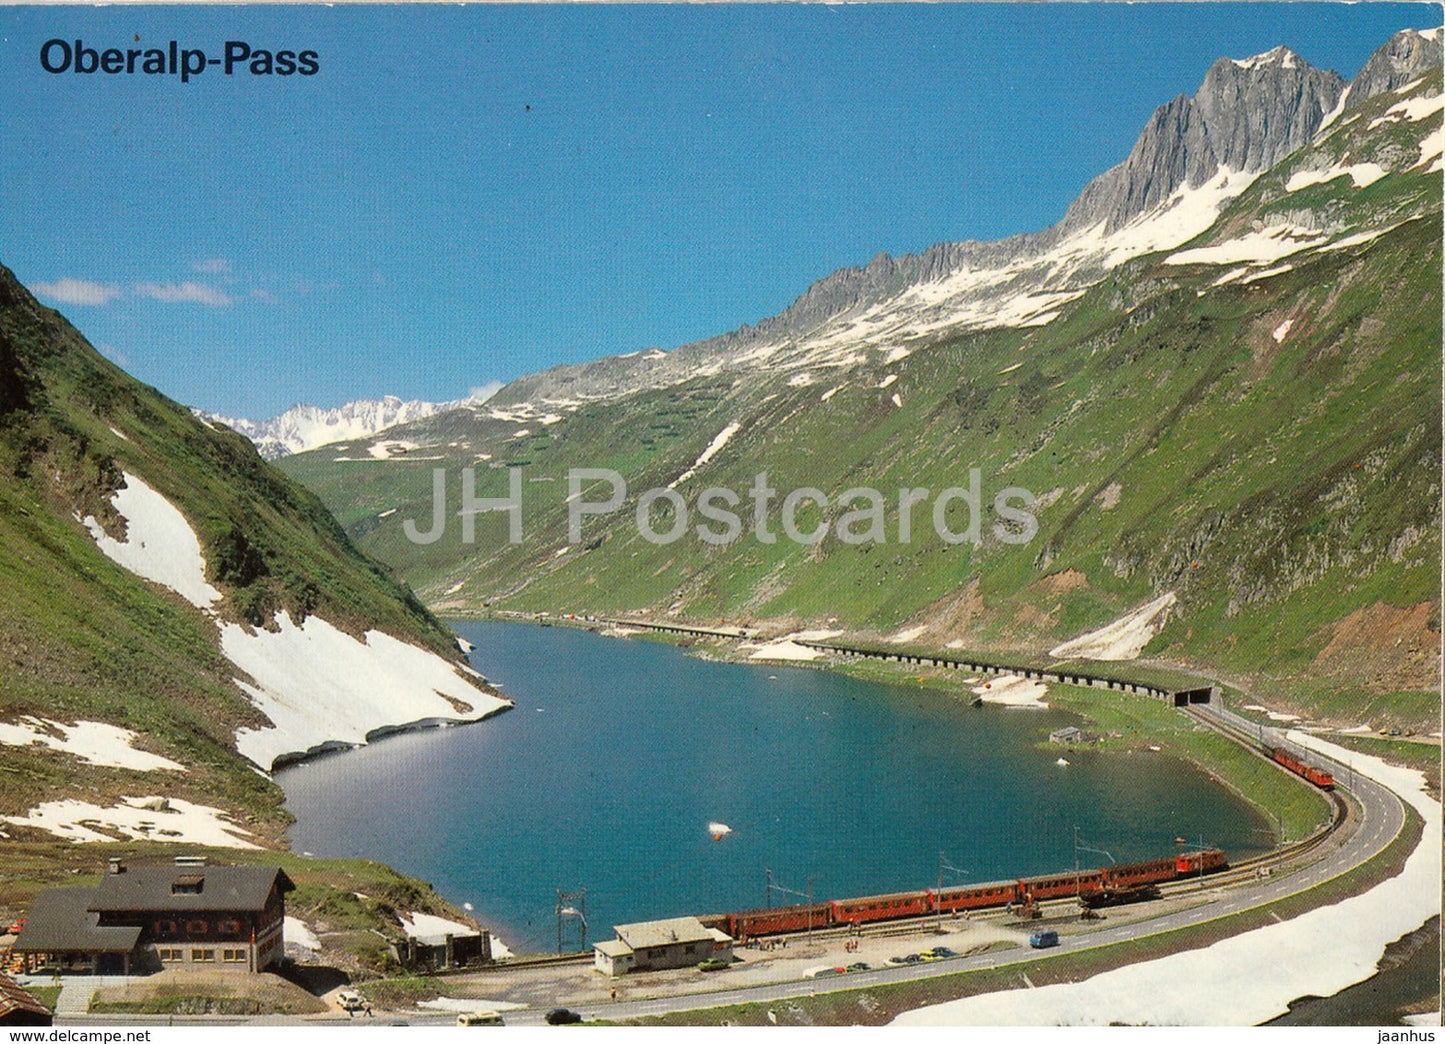 Oberalp Pass - Grossen Schijen - railway - train - 1970s - Switzerland - unused - JH Postcards